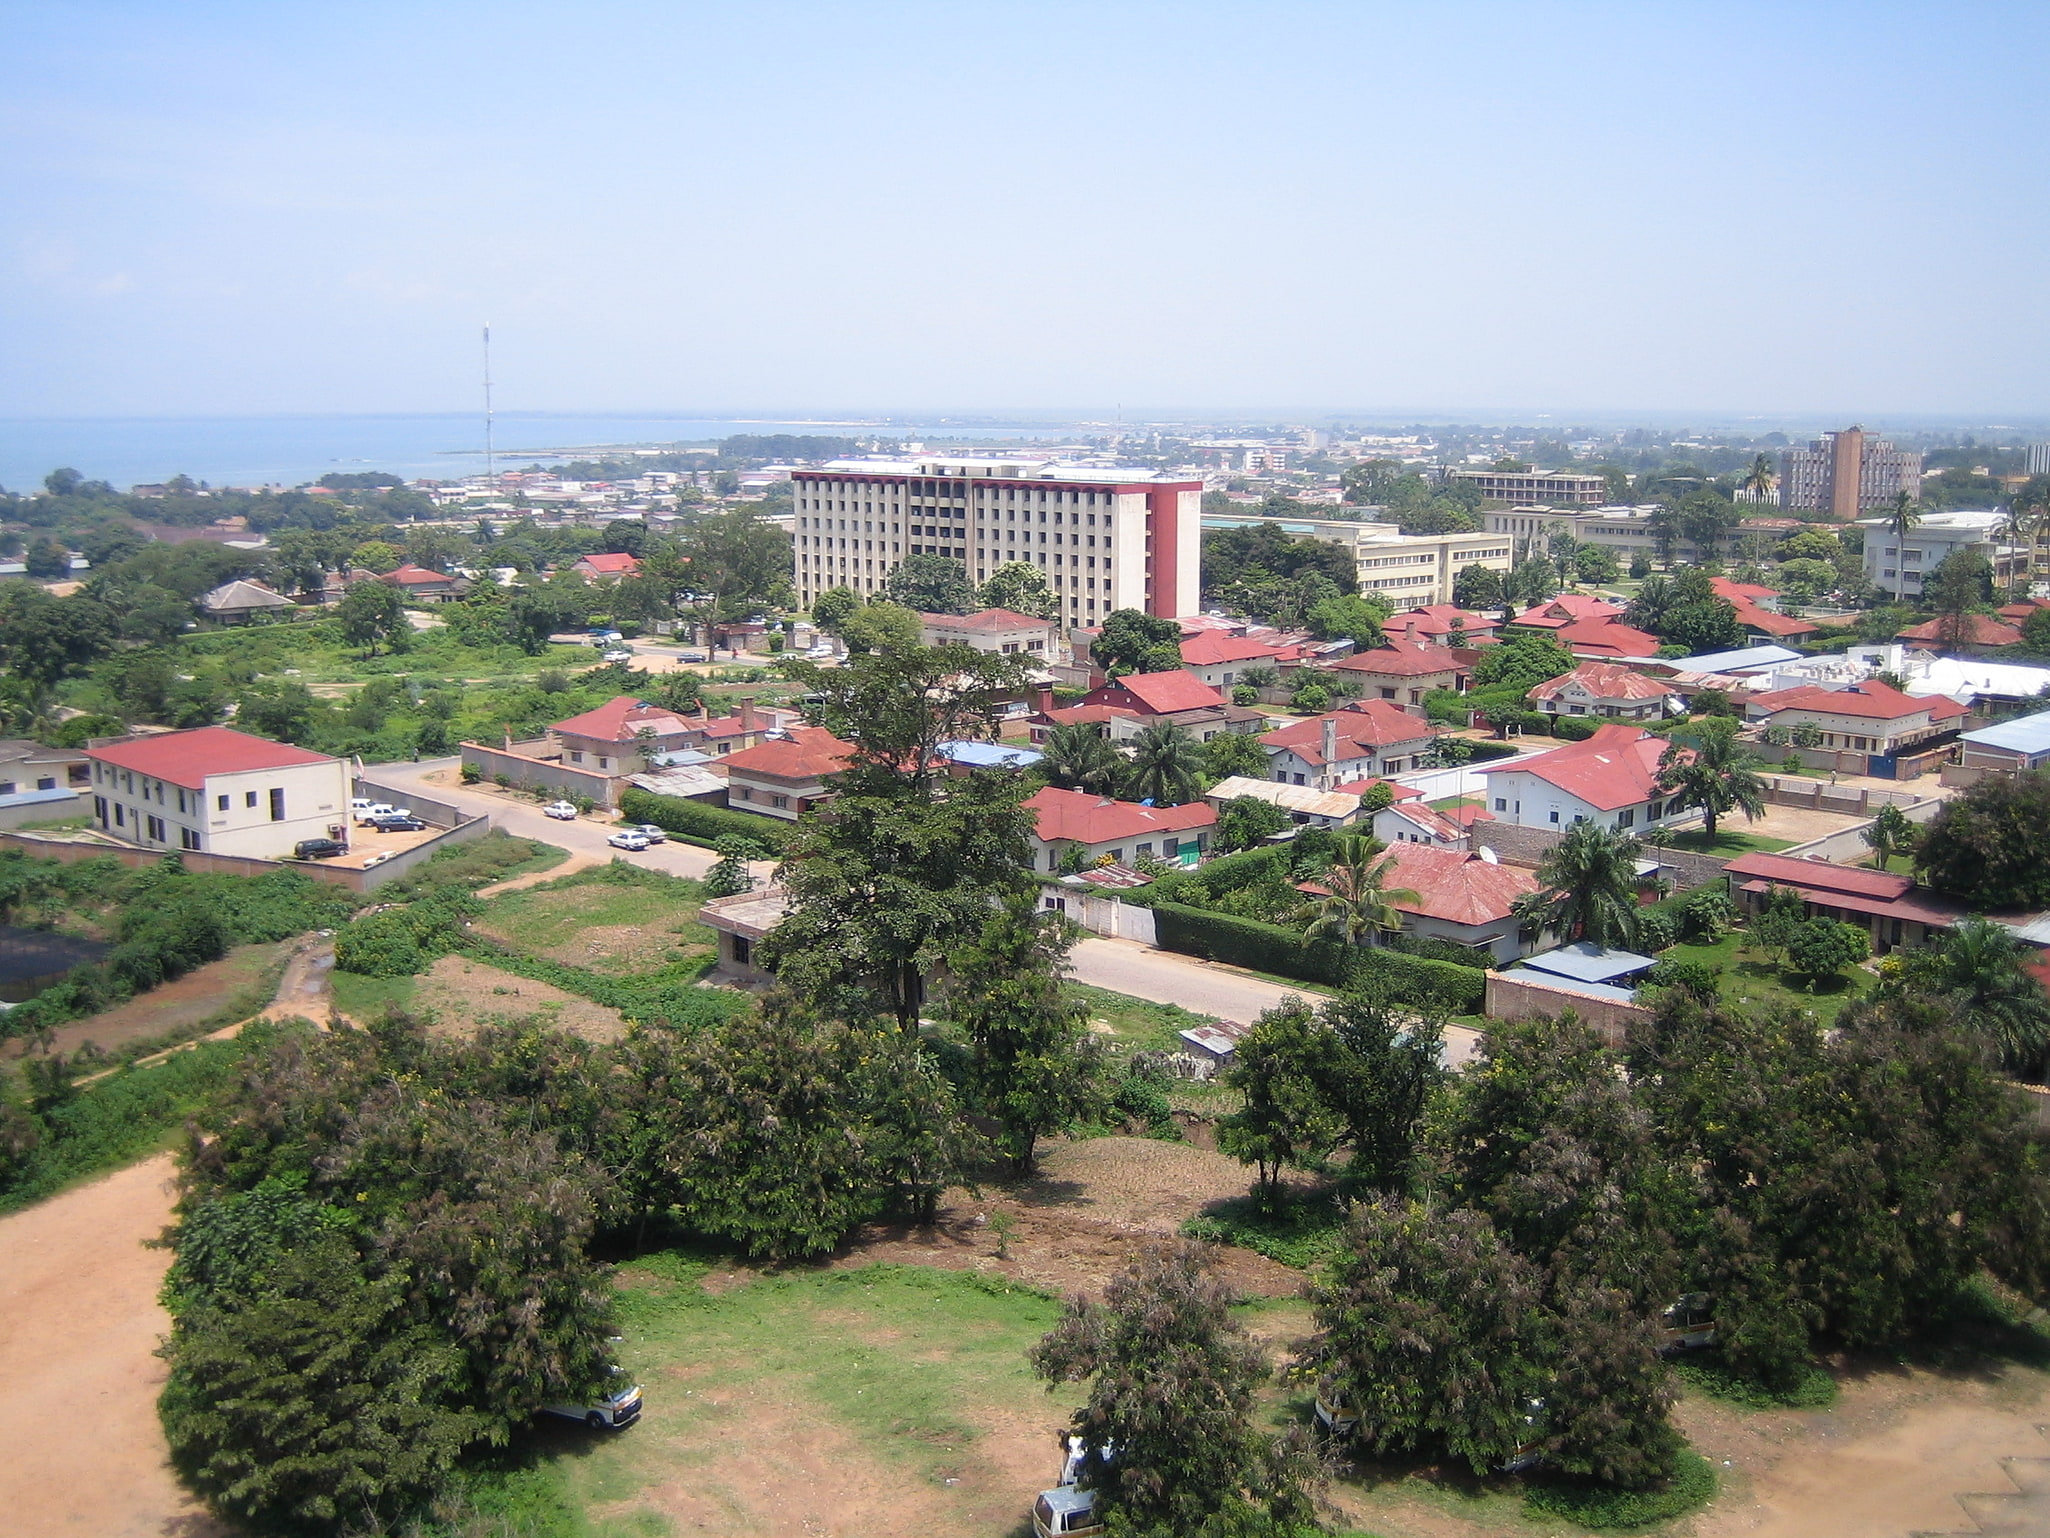 Buyumbura, Burundi